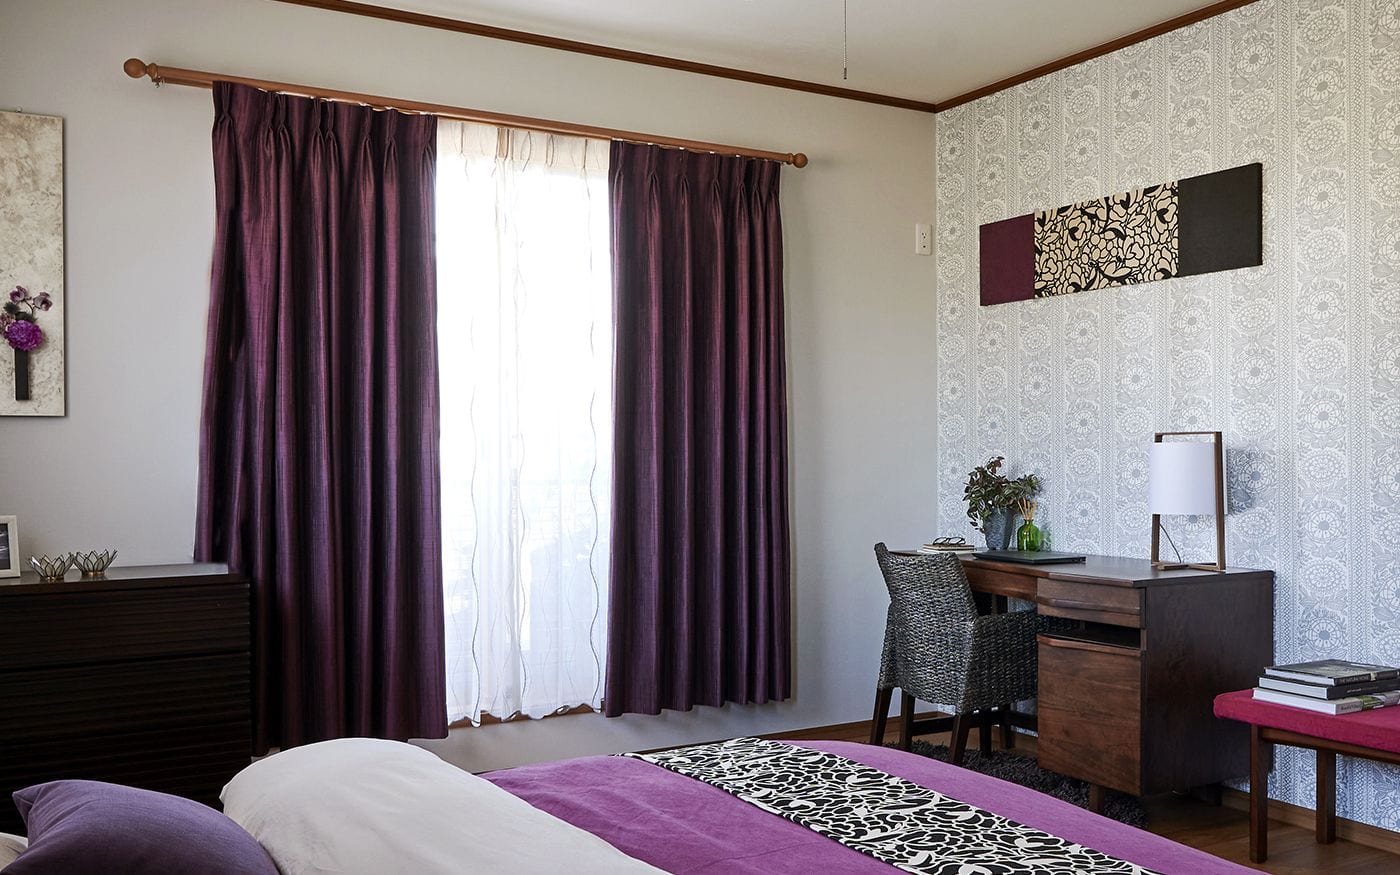 デザイン性と機能性から選びたい寝室の「カーテン」